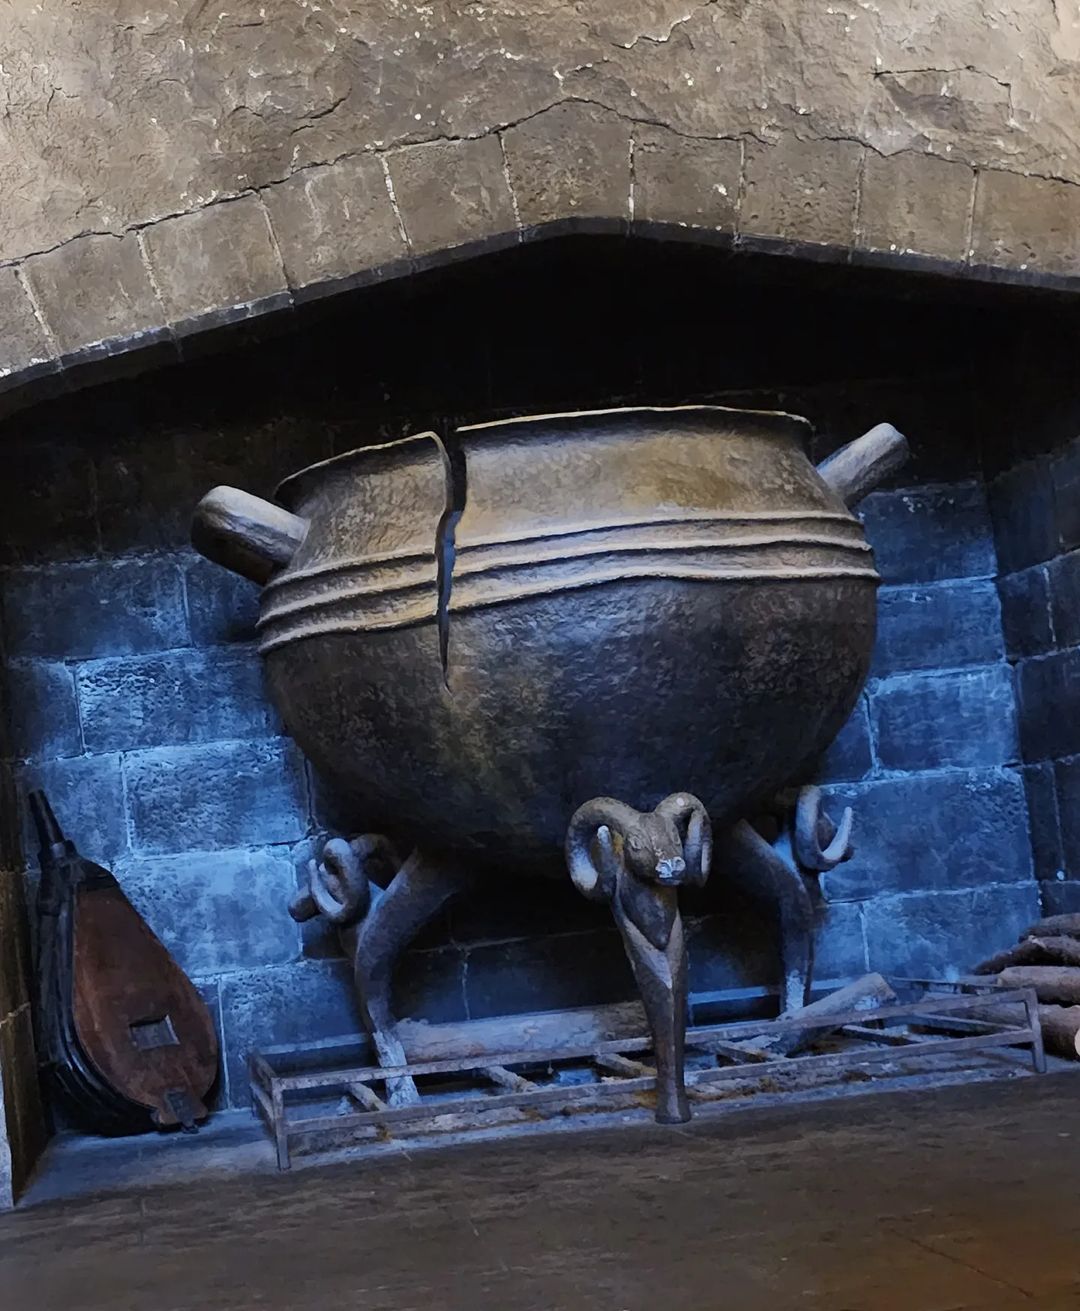 Decoração Leaky Cauldron - Restaurante do Harry Potter na Universal Studios